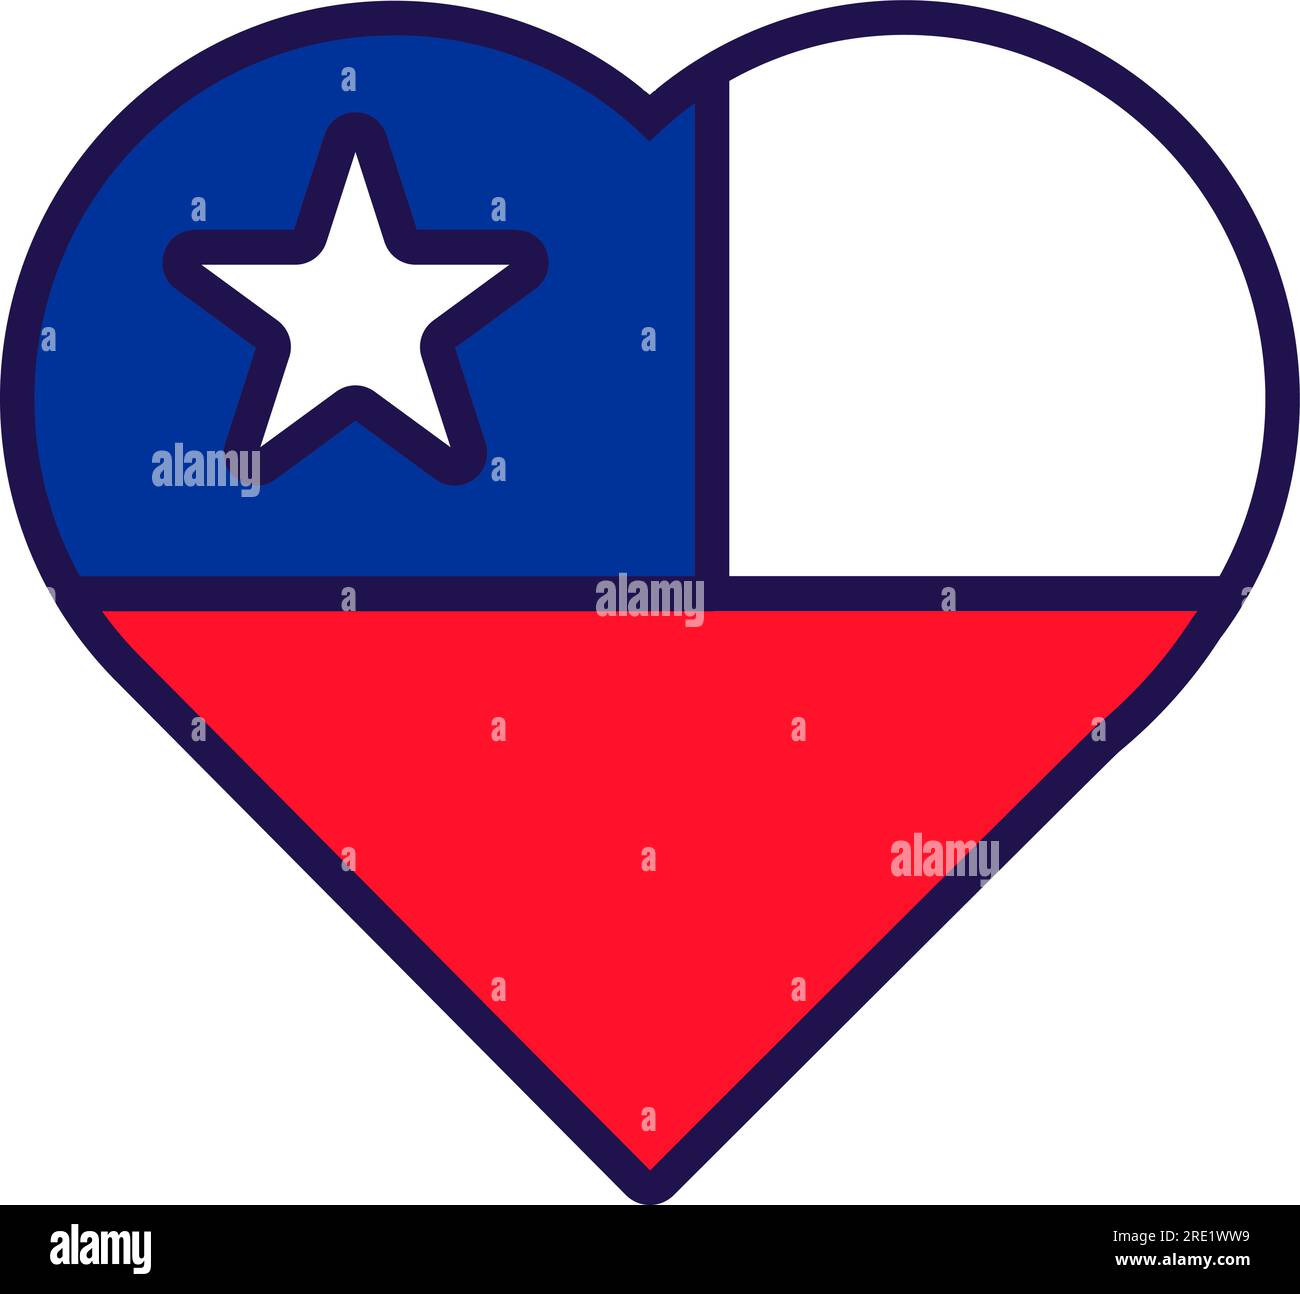 Patriot Heart in den Flaggenfarben der Republik Chile. Festliches Element, Attribute des chilenischen Unabhängigkeitstages. Cartoon-Vektorsymbol in nationalen Farben Stock Vektor